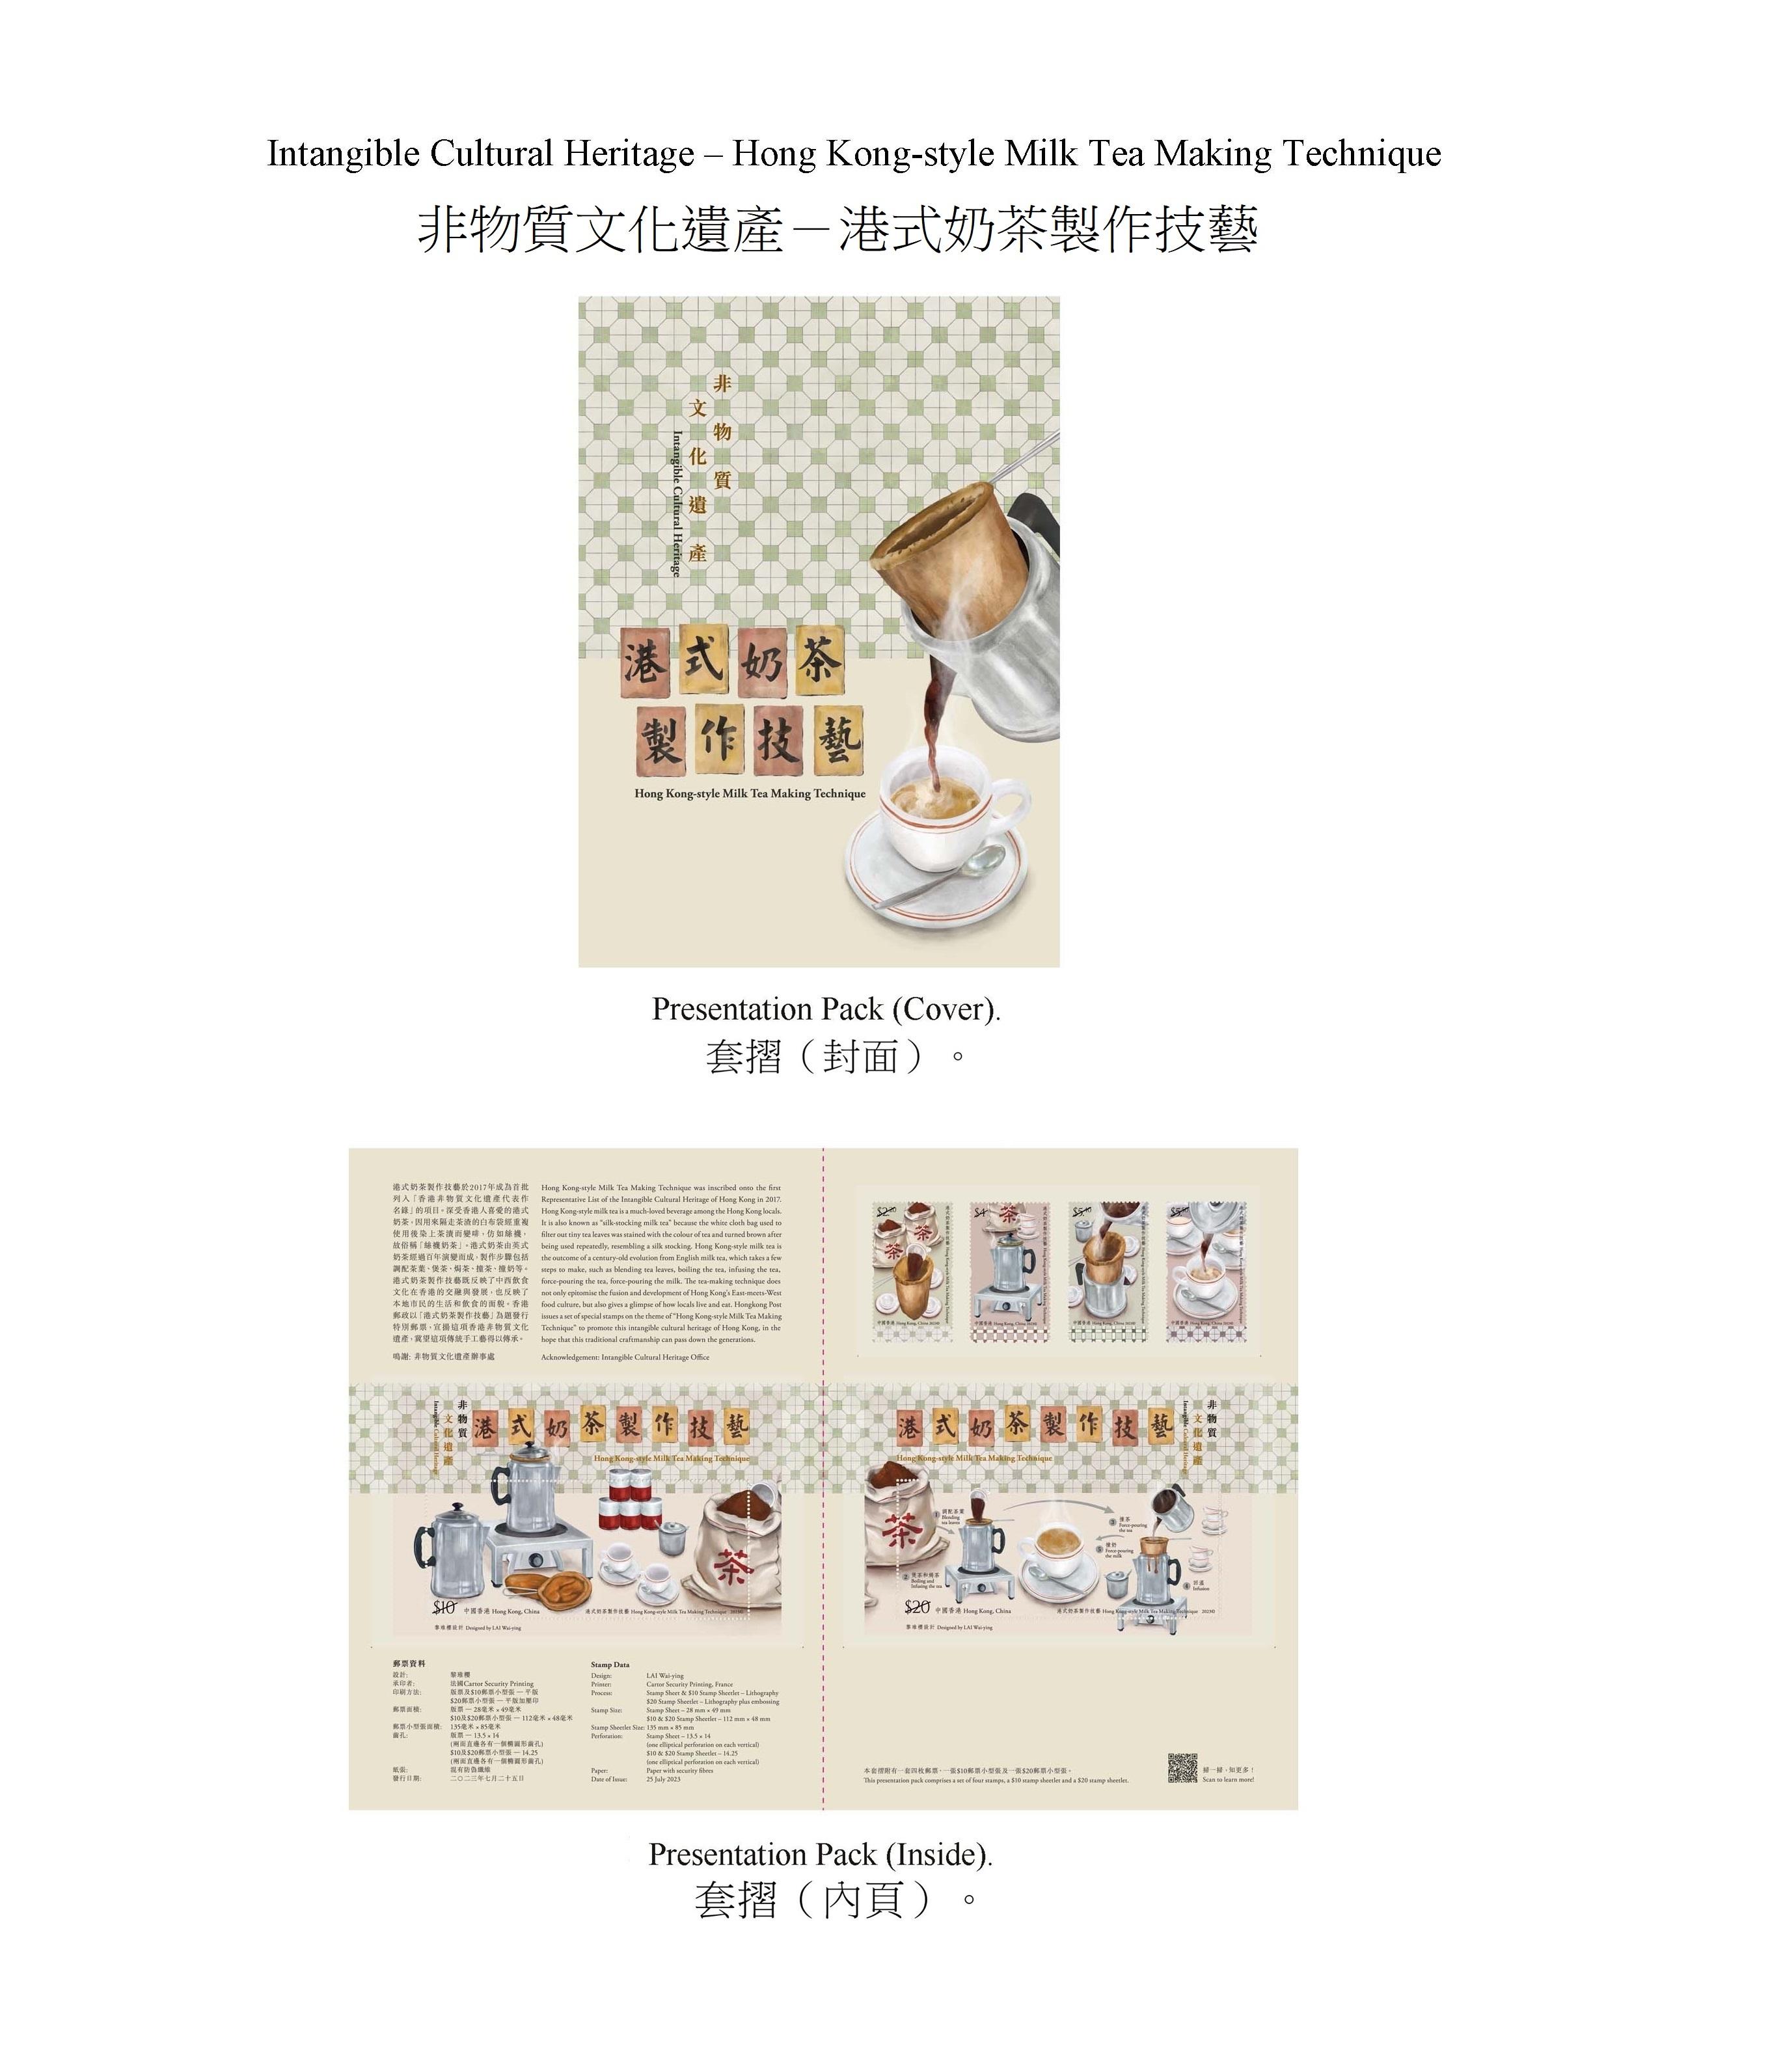 香港邮政七月二十五日（星期二）发行以「非物质文化遗产——港式奶茶制作技艺」为题的特别邮票及相关集邮品。图示套折。